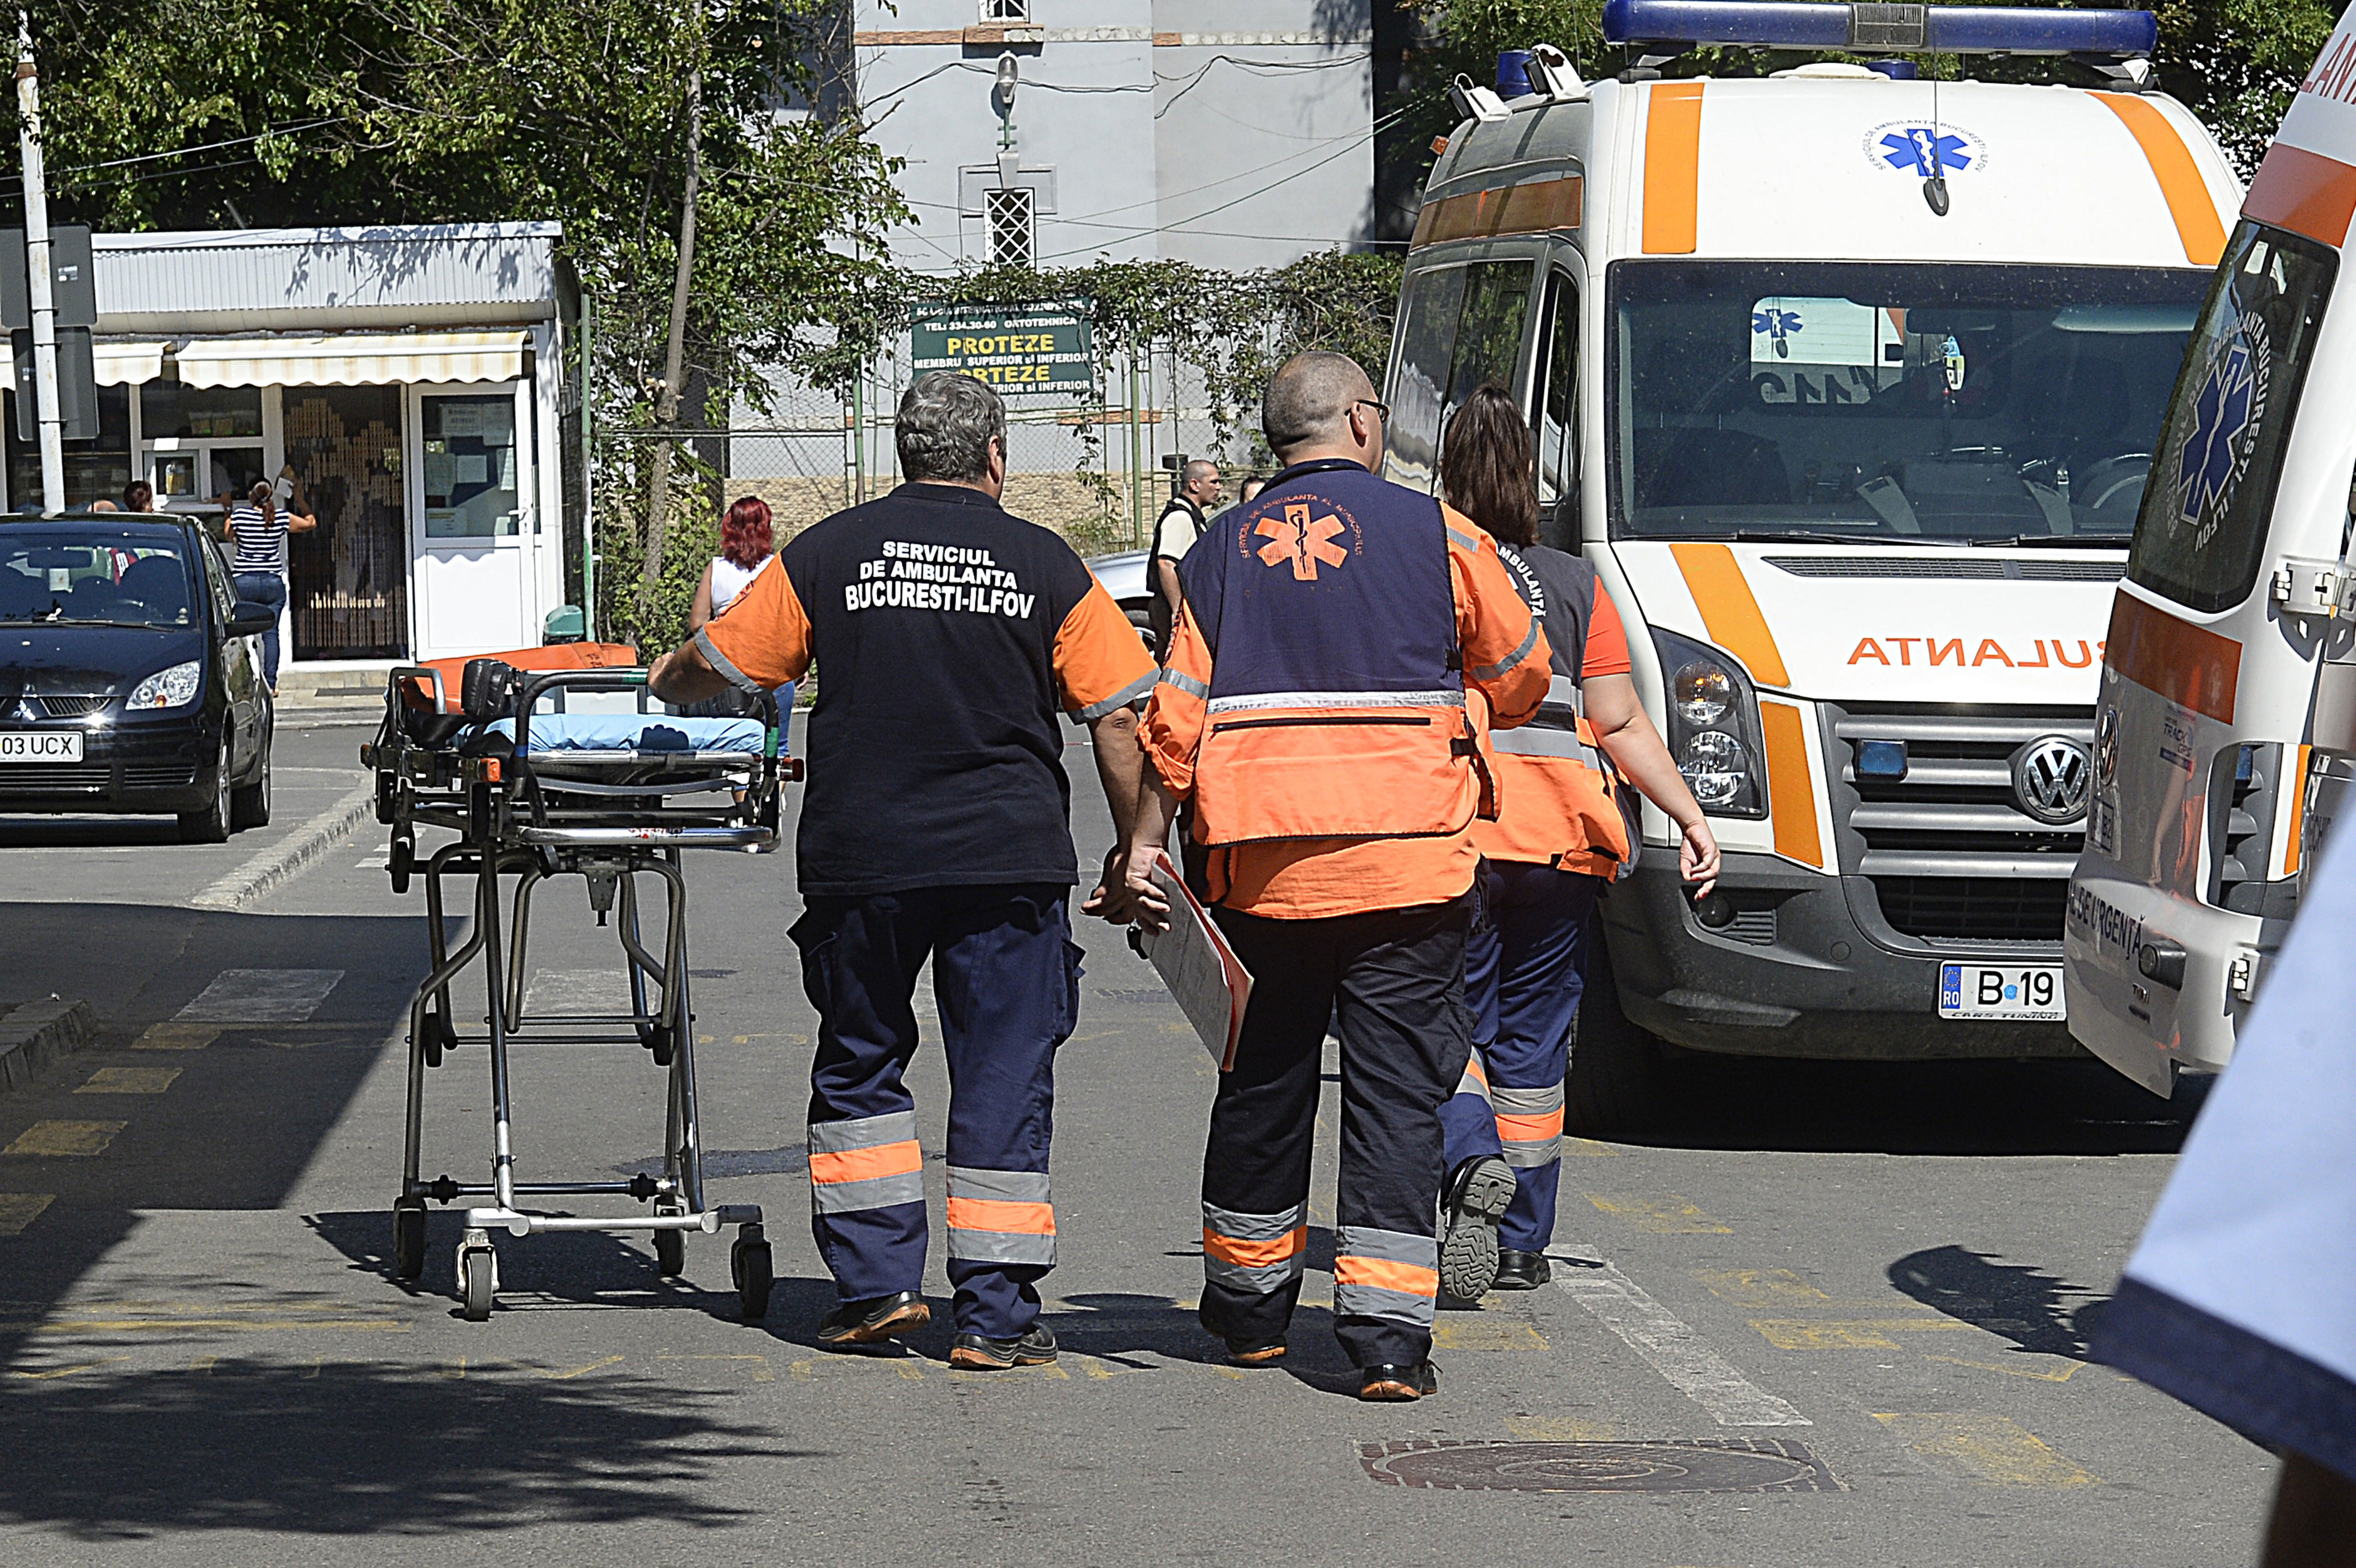 Şase protestatari din Piaţa Victoriei au avut nevoie de îngrijri medicale,doi au fost duşi la spital